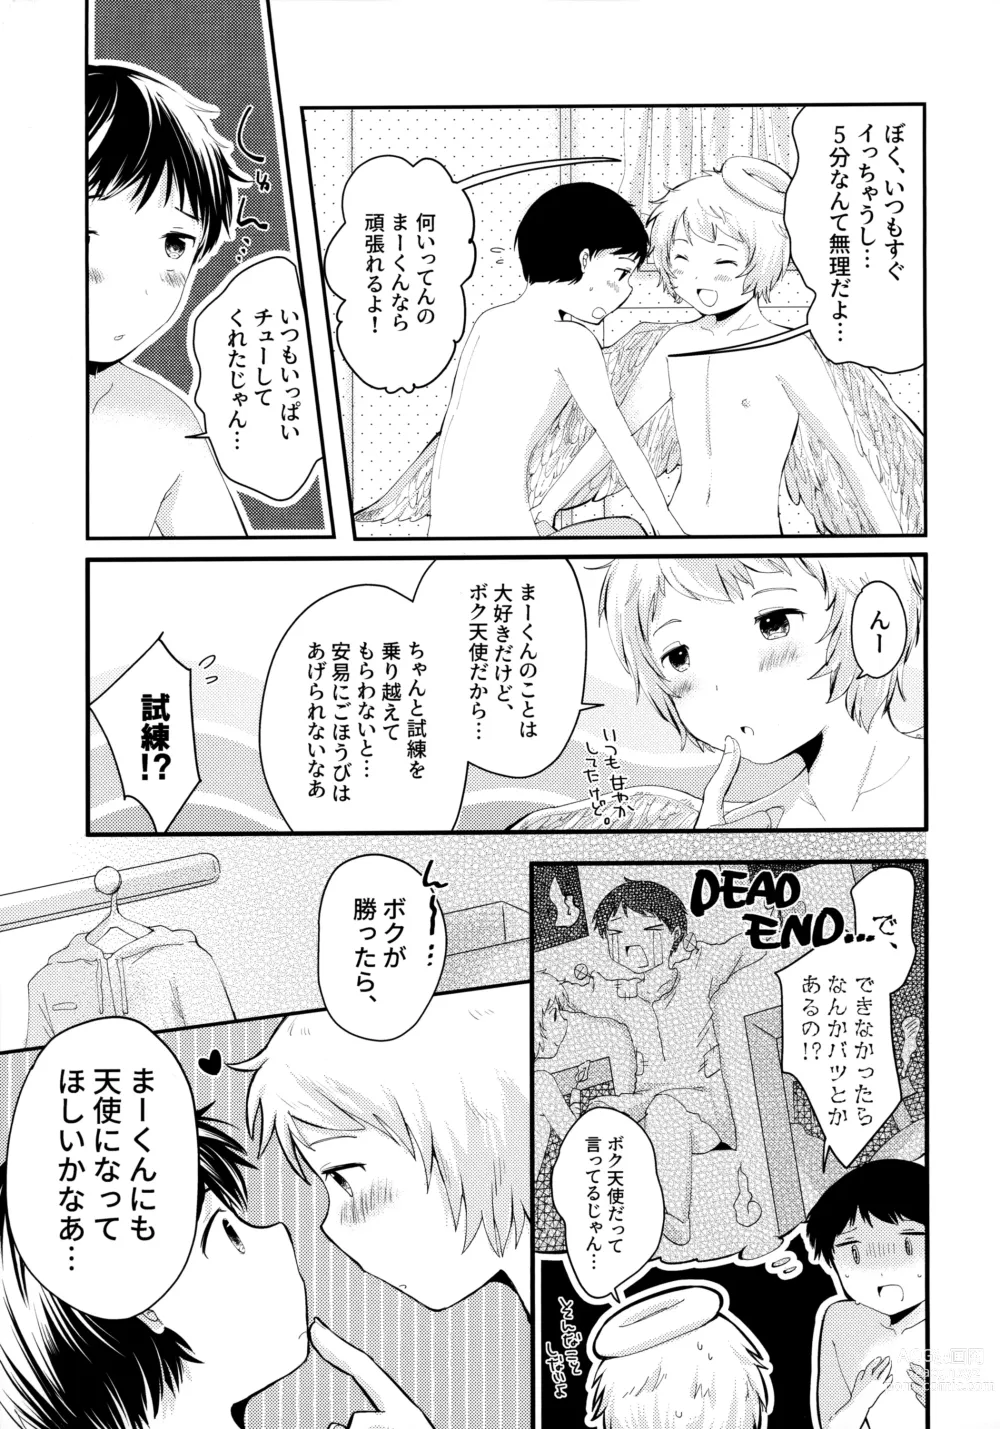 Page 8 of doujinshi Tenshinohane Yasume